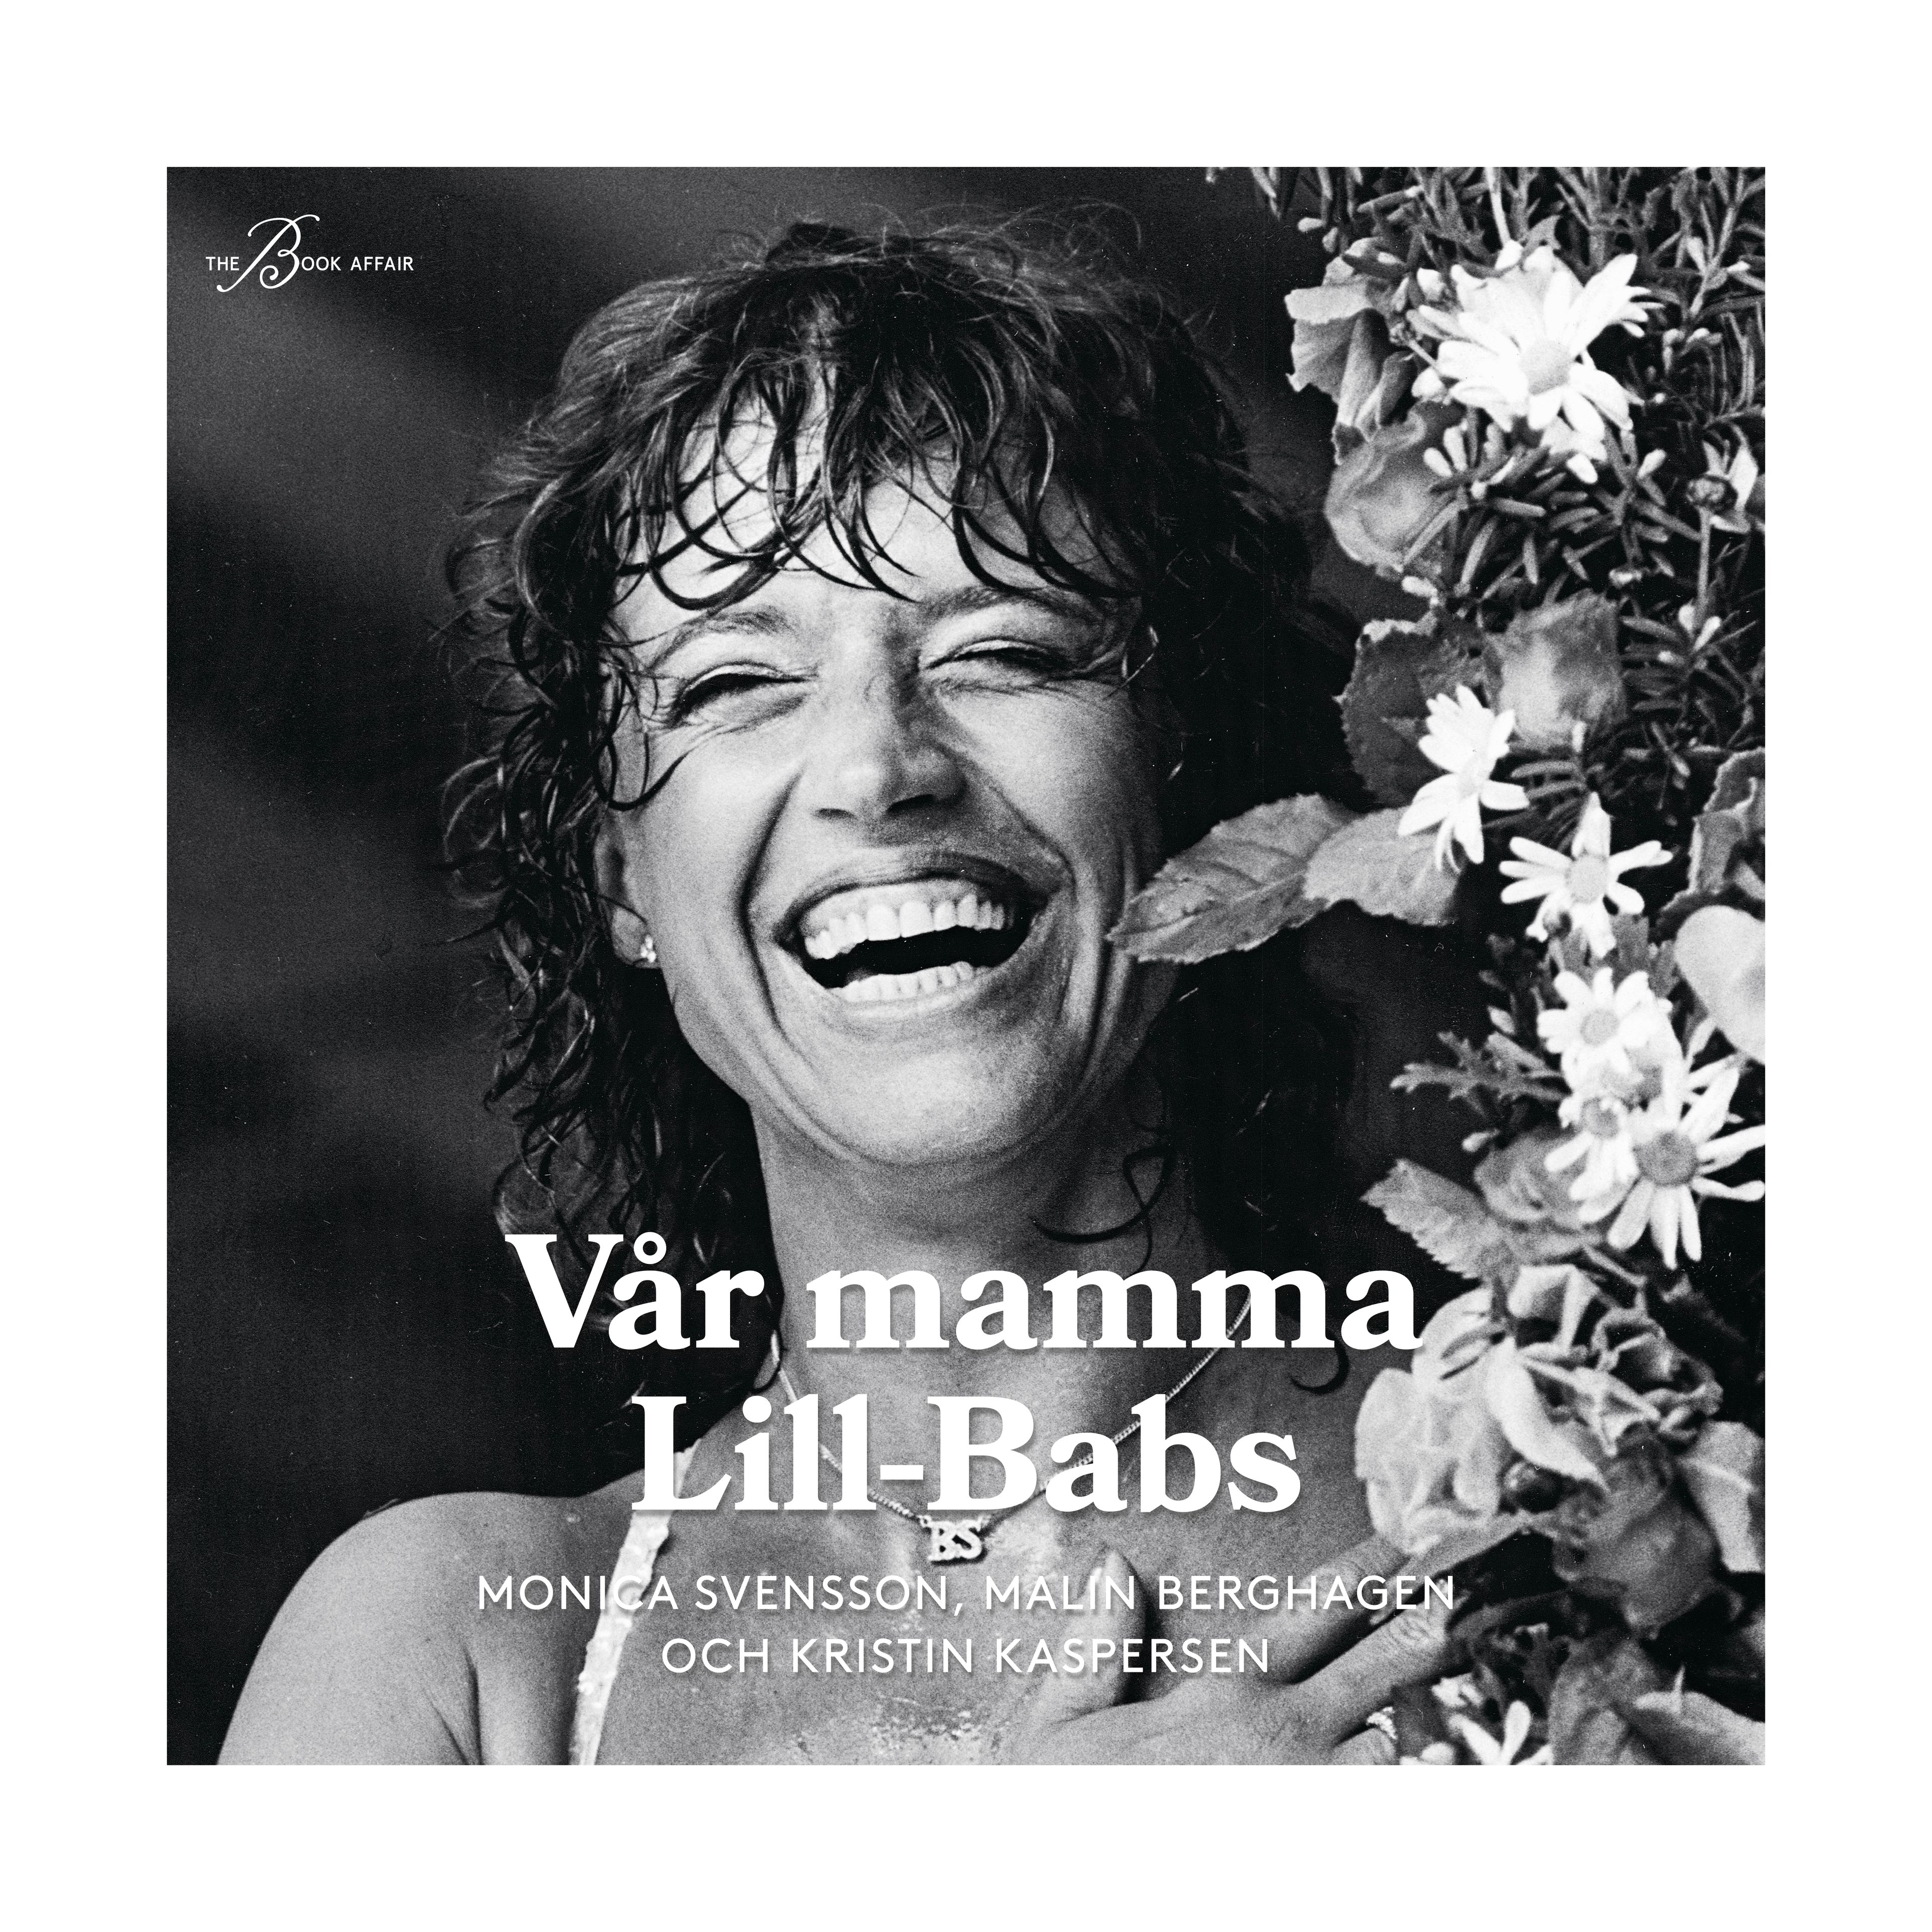 Vår mamma Lill-Babs, ljudbok av Malin Berghagen, Kristin Kaspersen, Monica Svensson